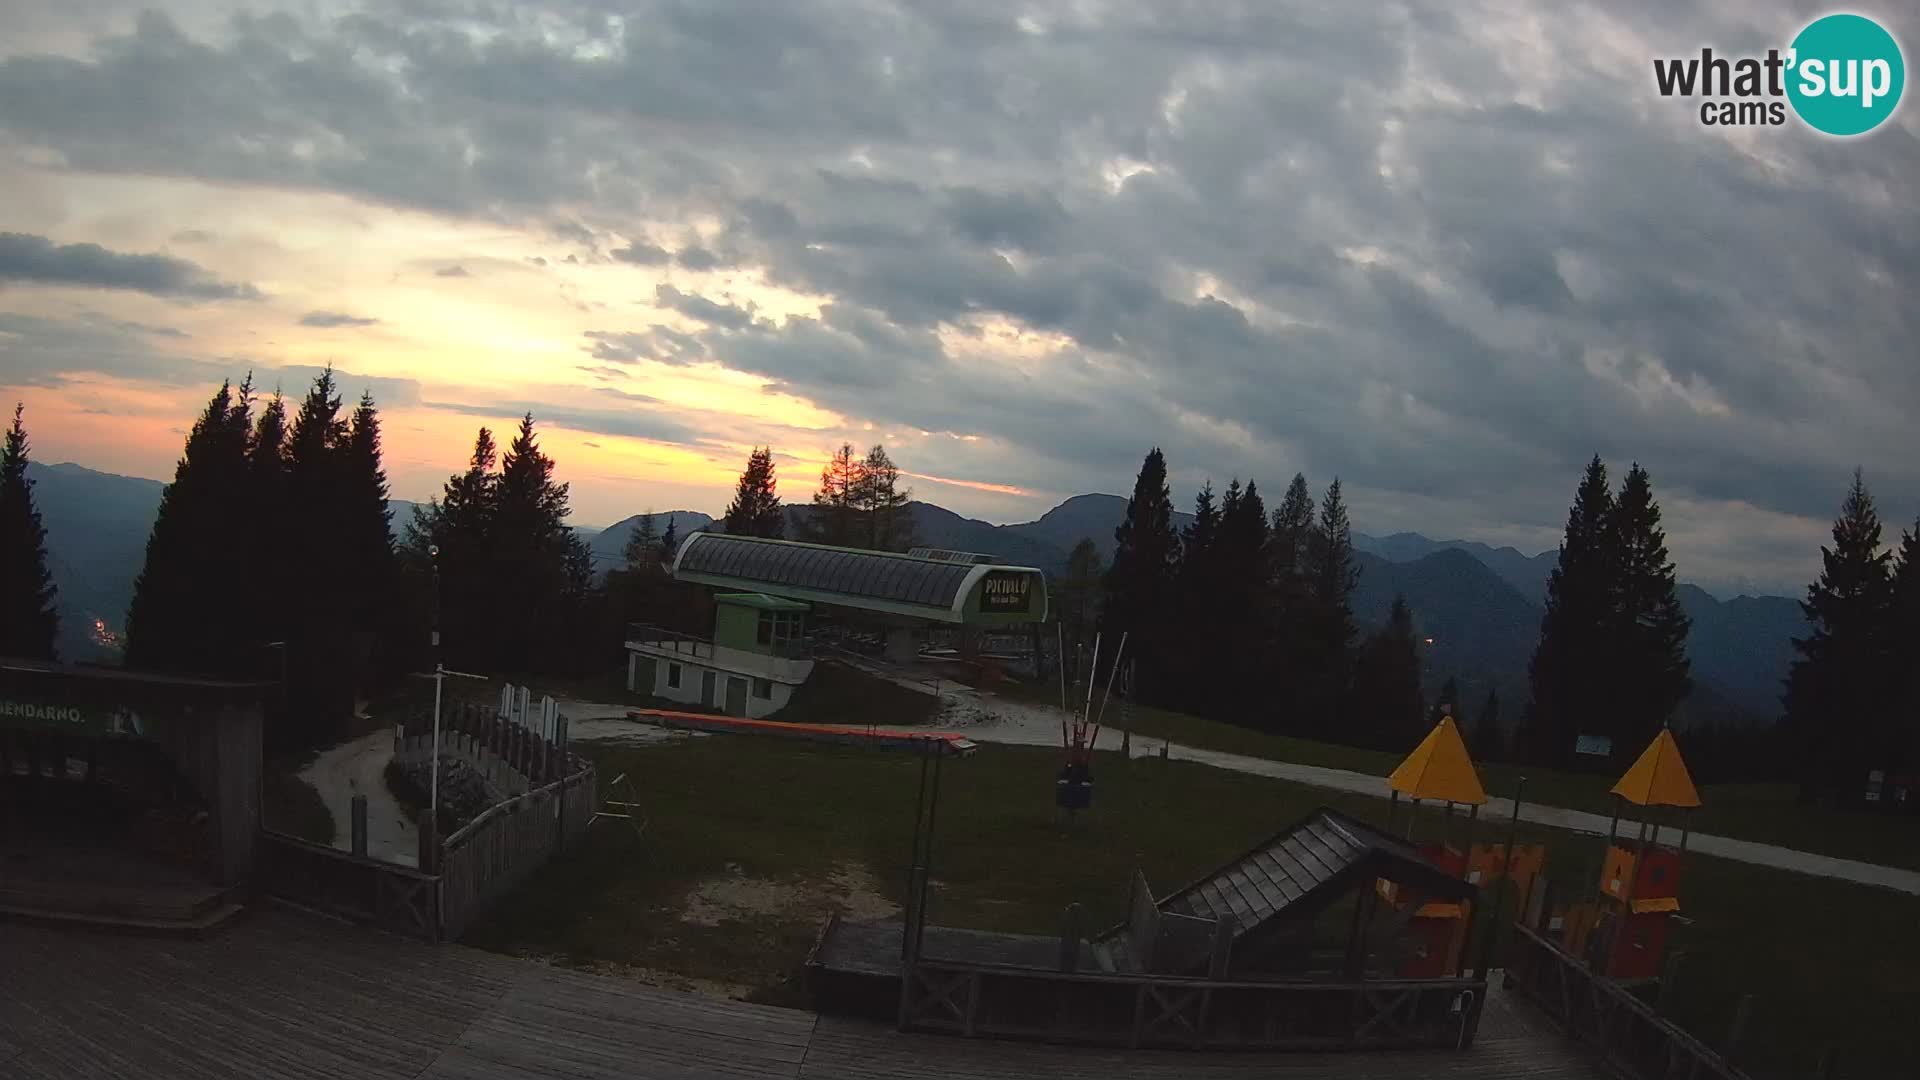 Alpska Perla Ski hotel Cerkno Počivalo webcam – Slovenia